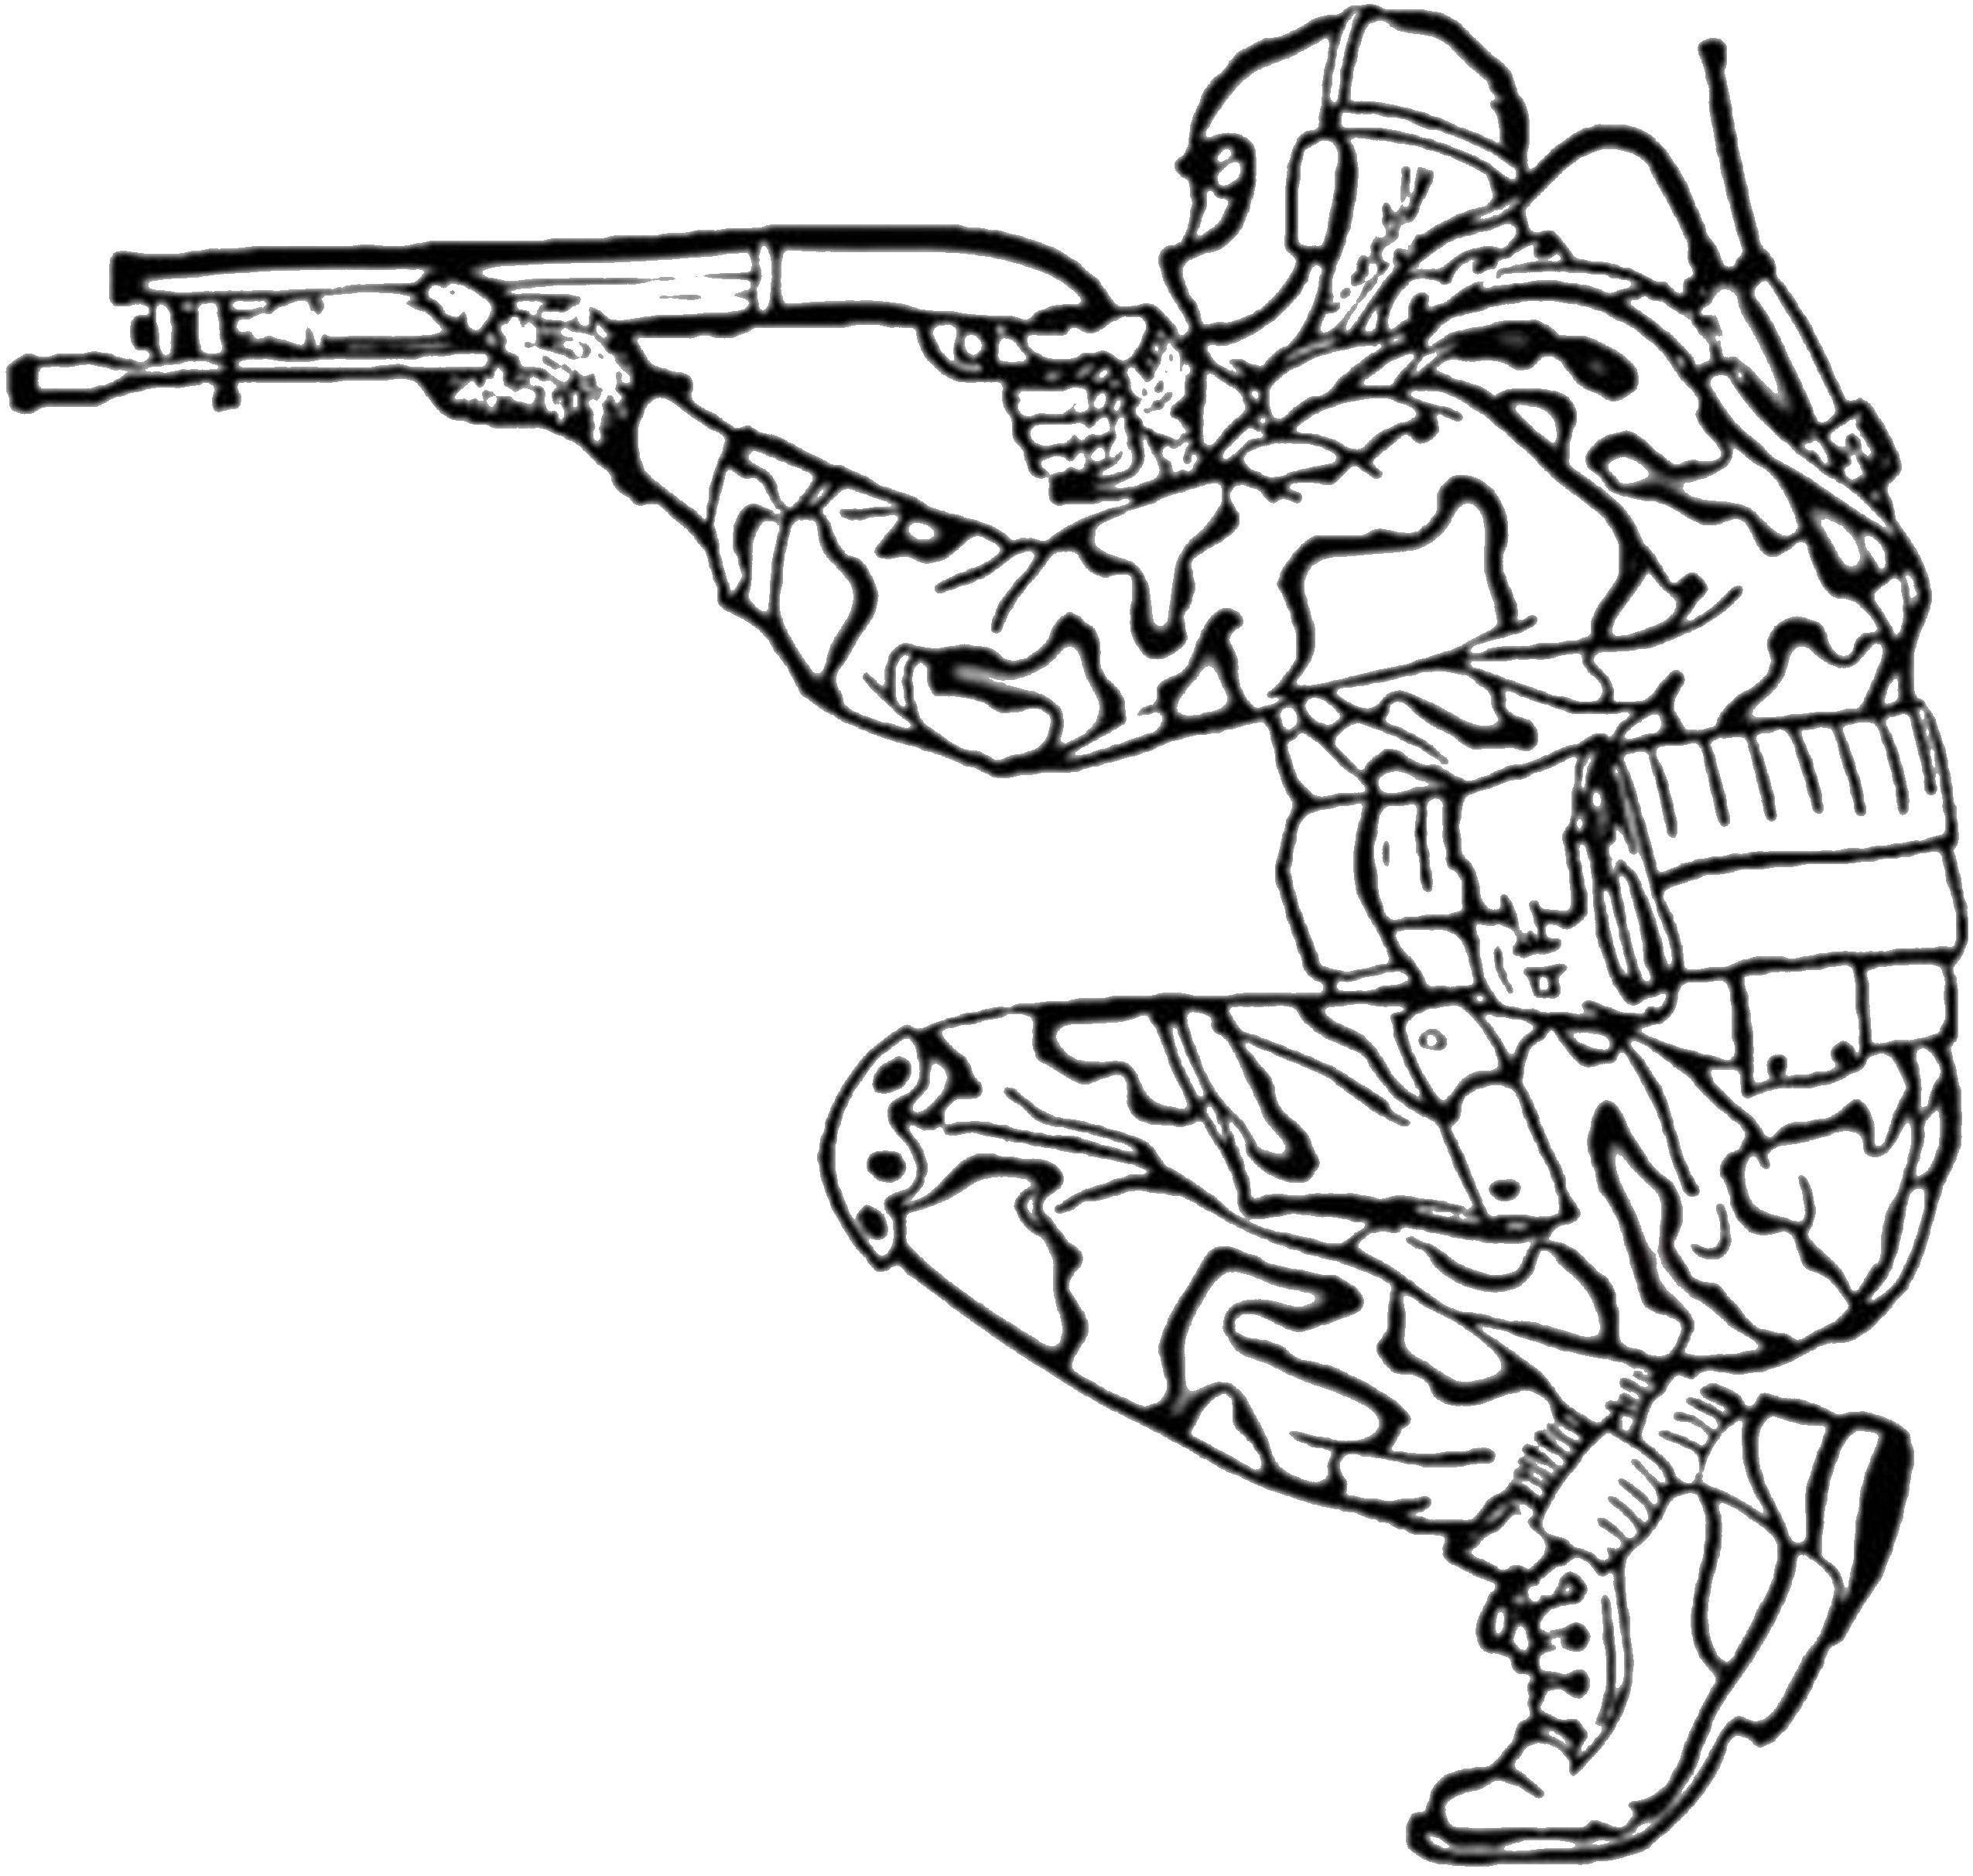 Название: Раскраска Снайпер целится. Категория: Для мальчиков. Теги: Солдат, оружие, стрельба.